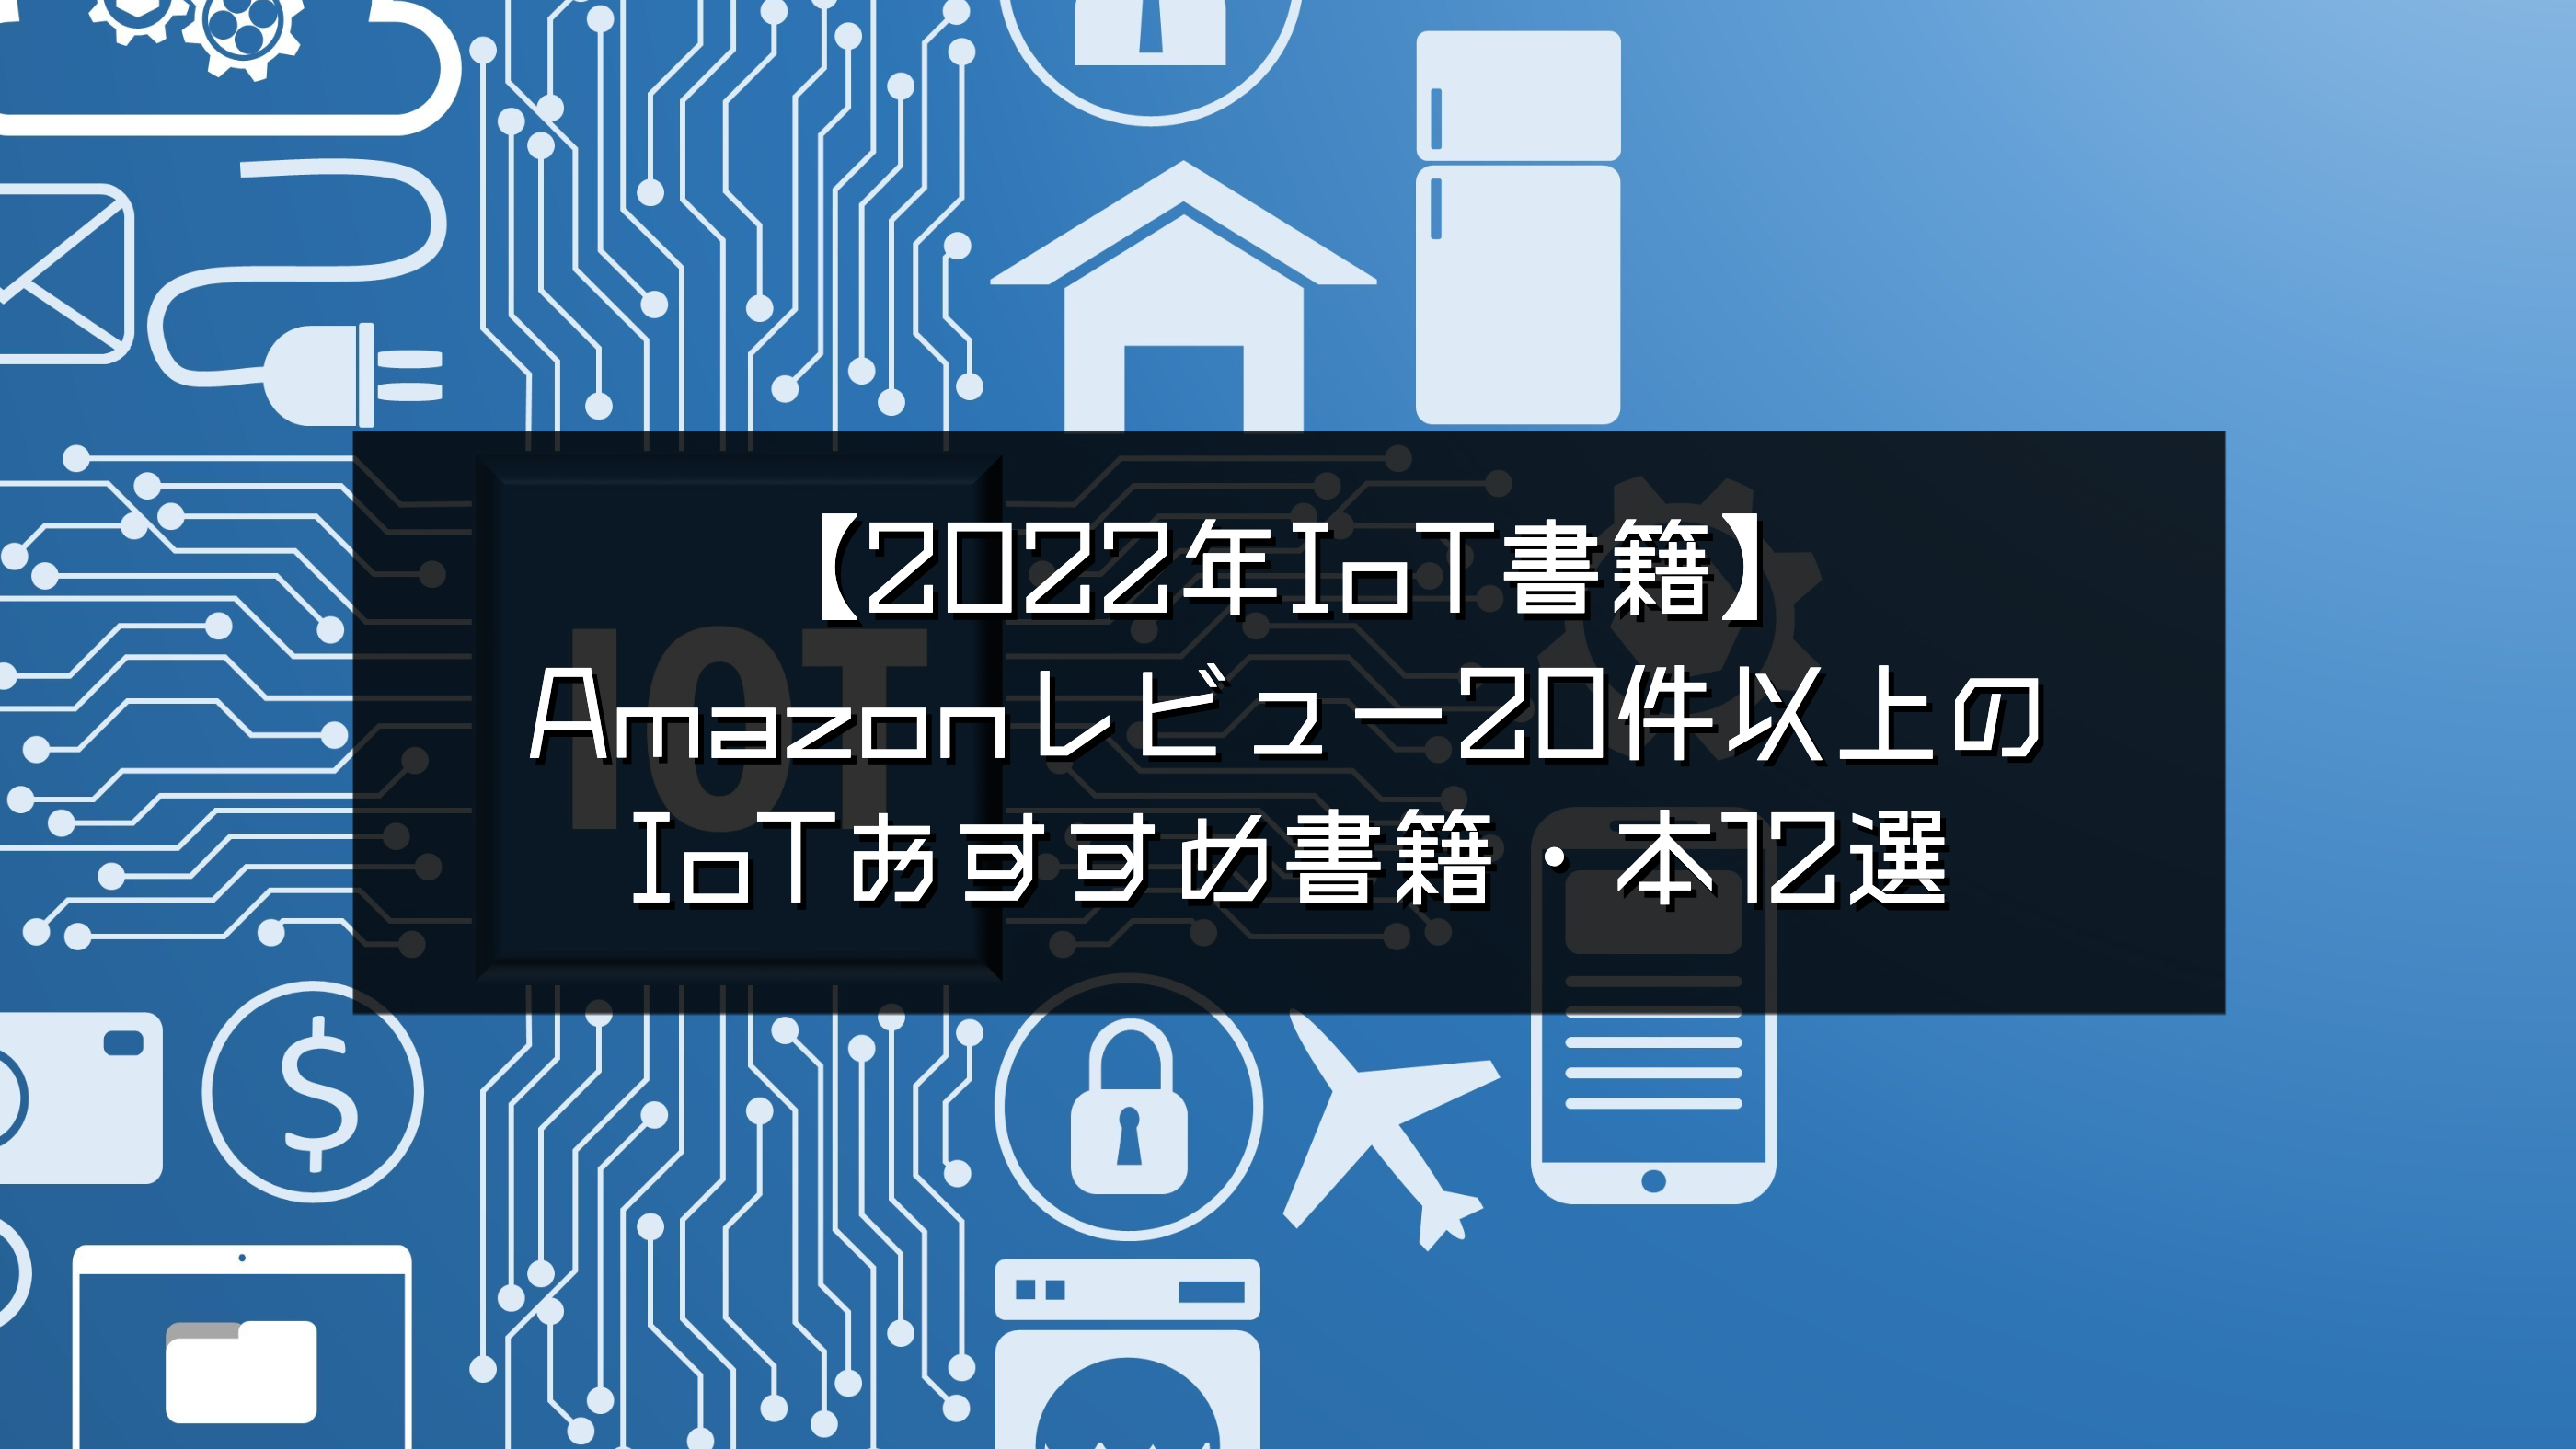 2023年IoT書籍】Amazonレビュー20件以上のIoTおすすめ書籍・本12